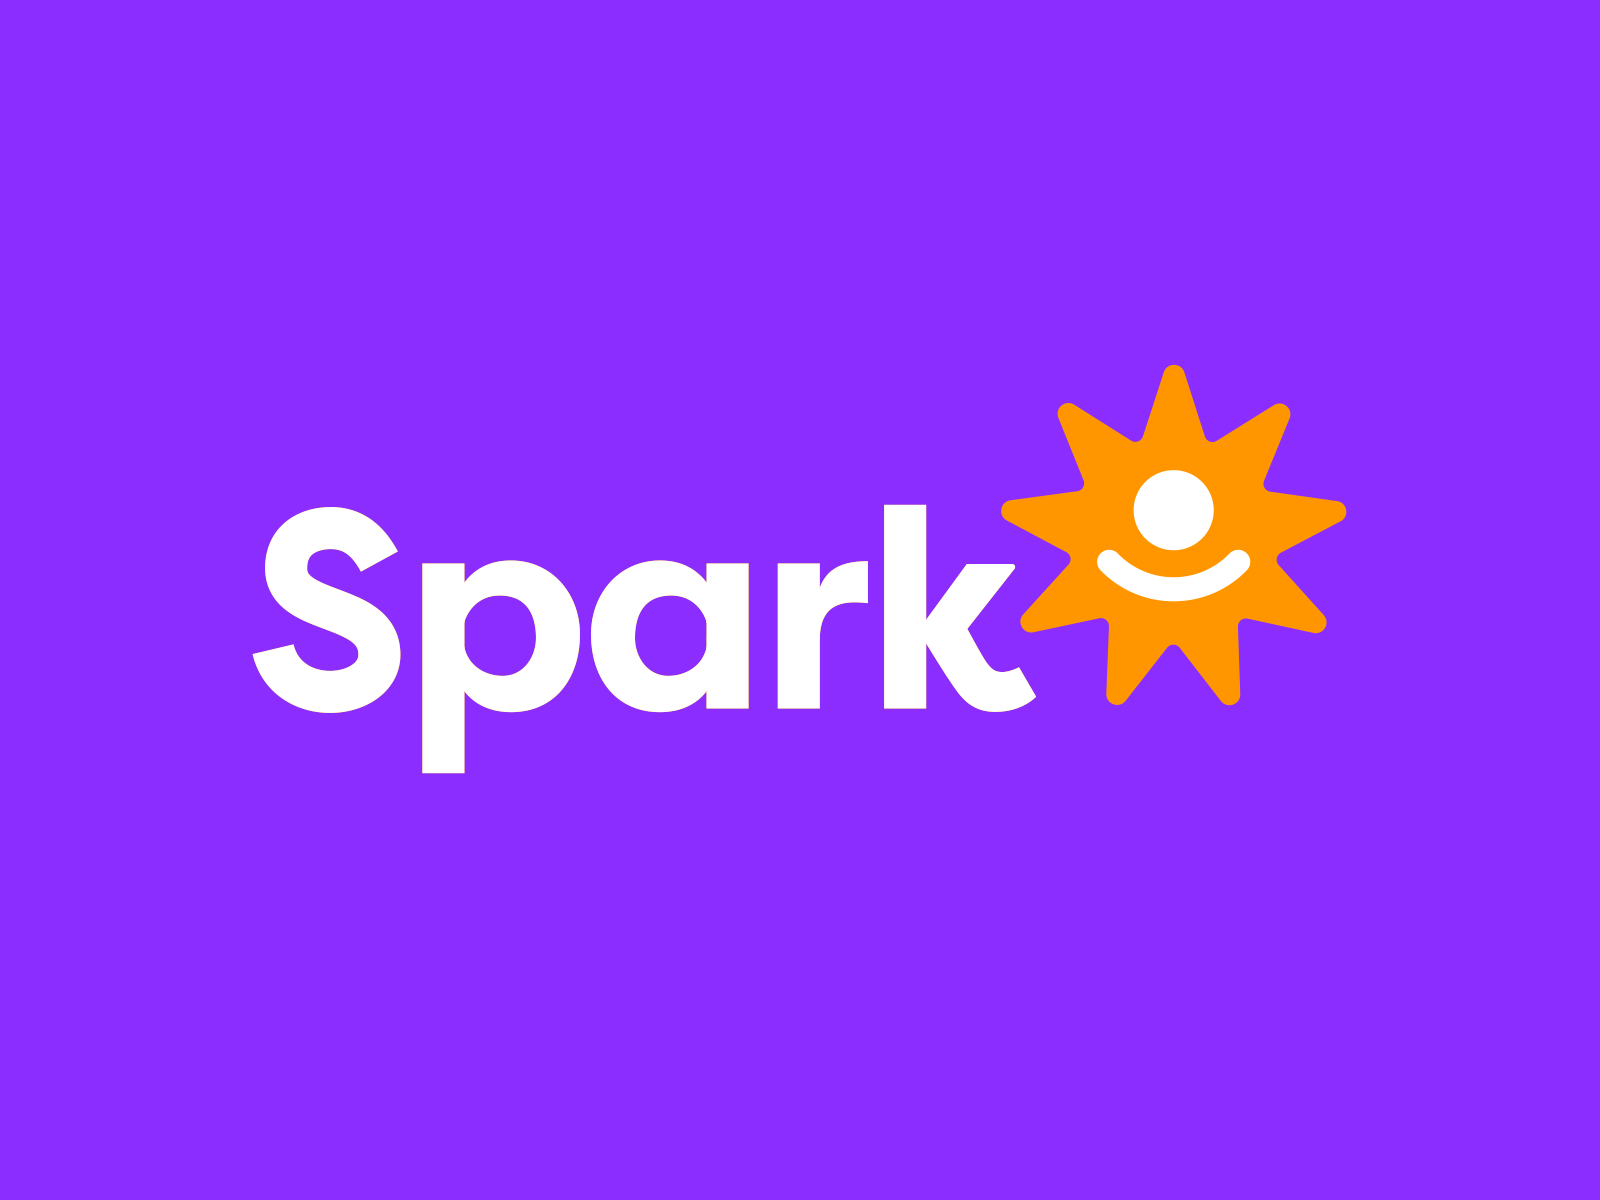 Spark logo animation animated logo animation icon logo logo animation logo motion logoanimation motion motion graphics motiondesign motiongraphics